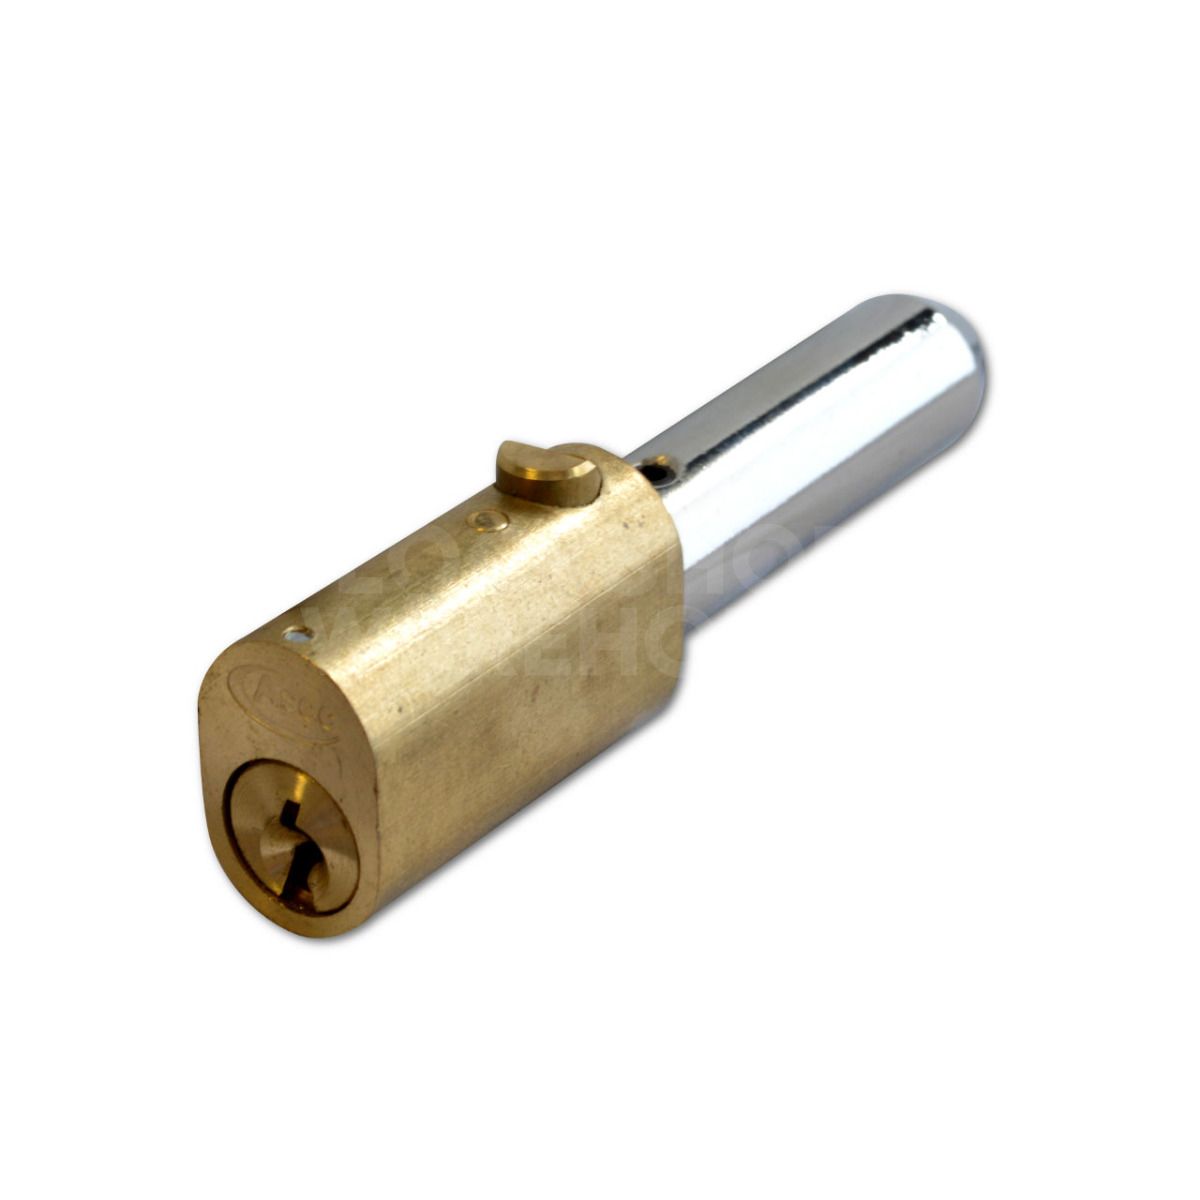 ASEC Oval Bullet Lock - 43mm Keyed Alike (Same as Viro)